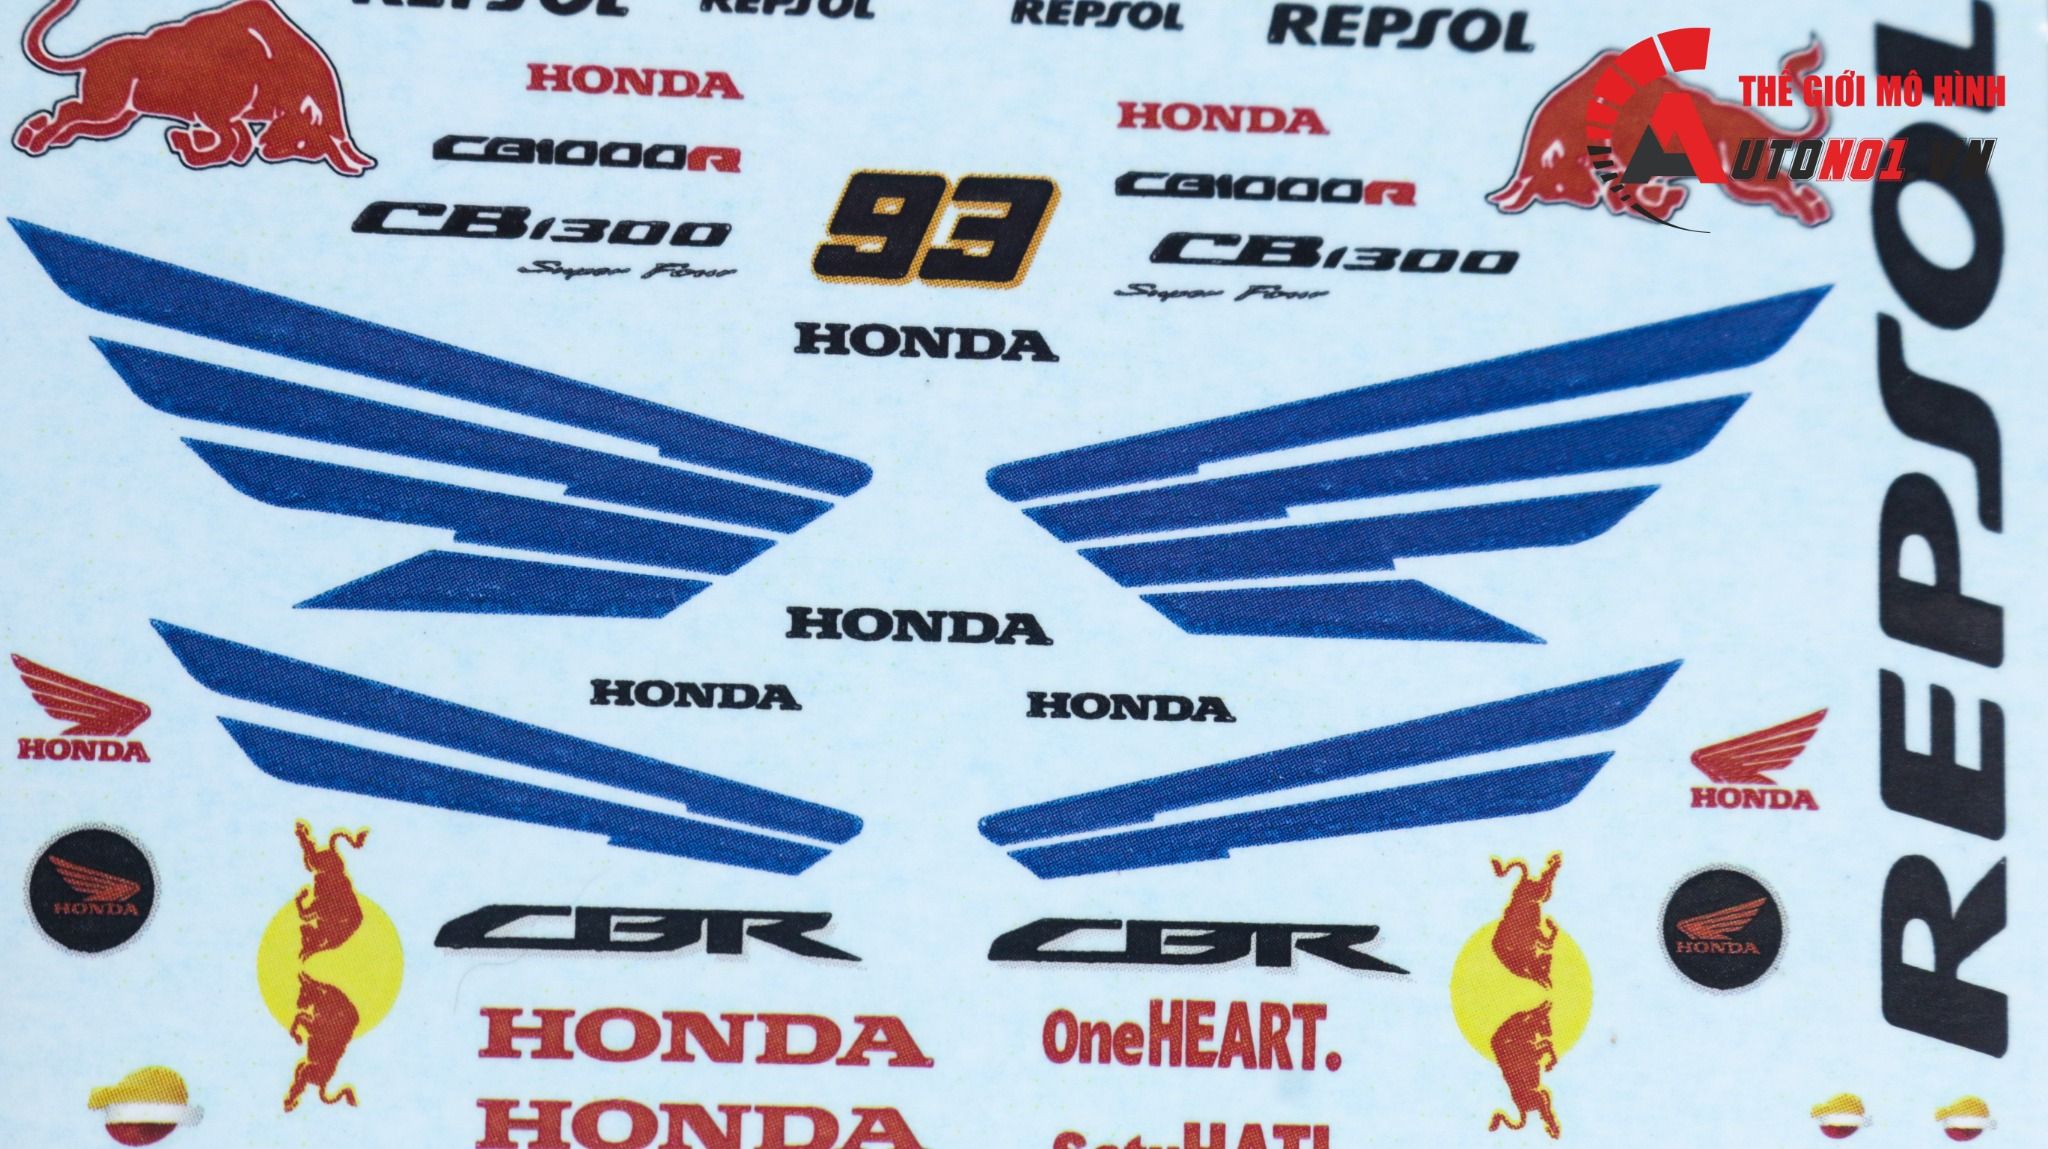  Decal nước độ Repsol - Redbull - cánh wing Honda CBR CB1300 dán mọi nền màu cho xe mô hình tỉ lệ 1:12 Autono1 DC501J 